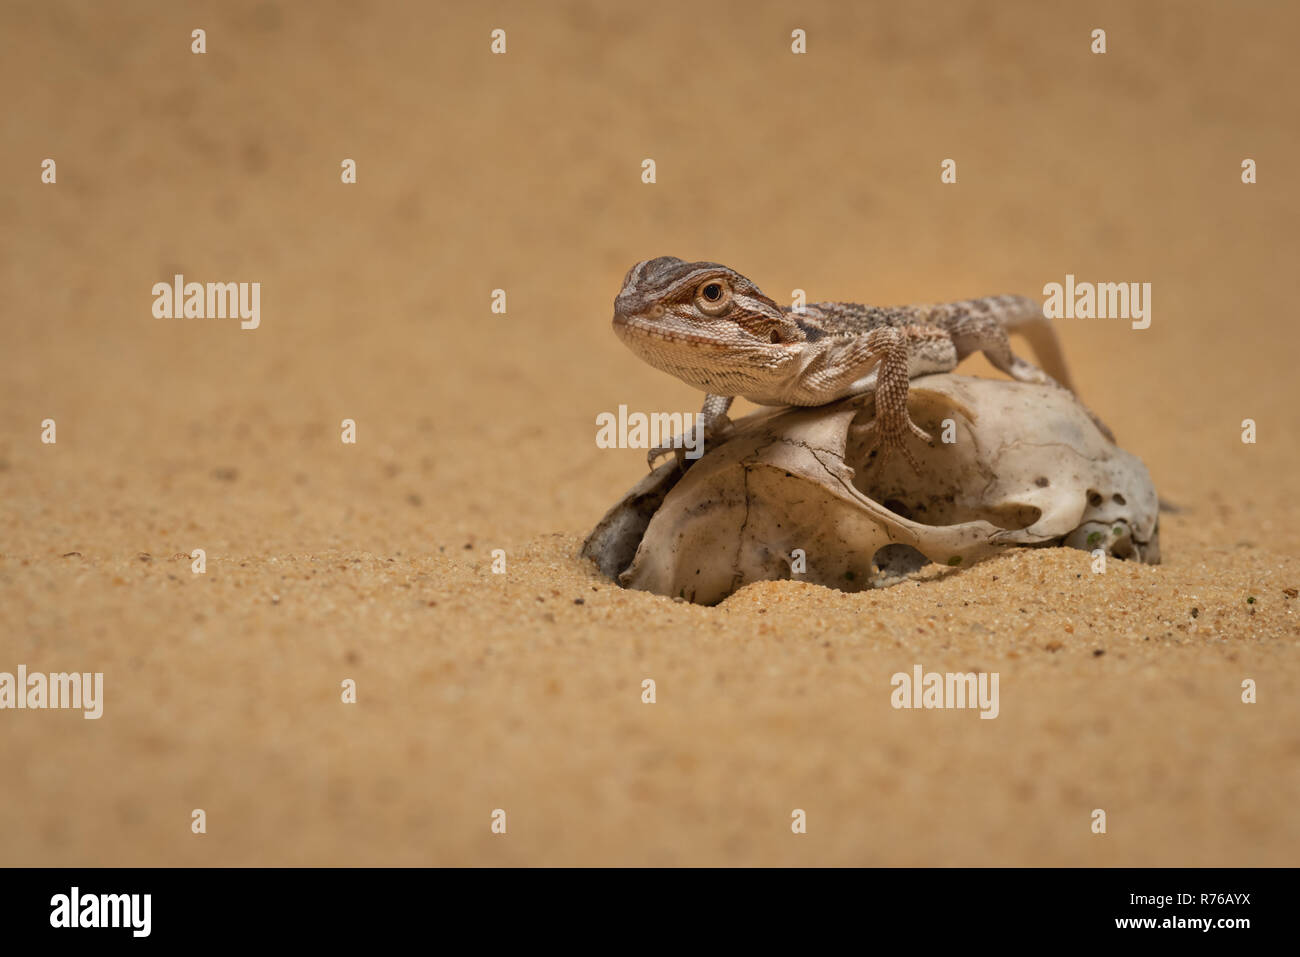 Faible niveau portrait d'un petit dragon barbu reposant sur un vieux crâne dans le sable Banque D'Images